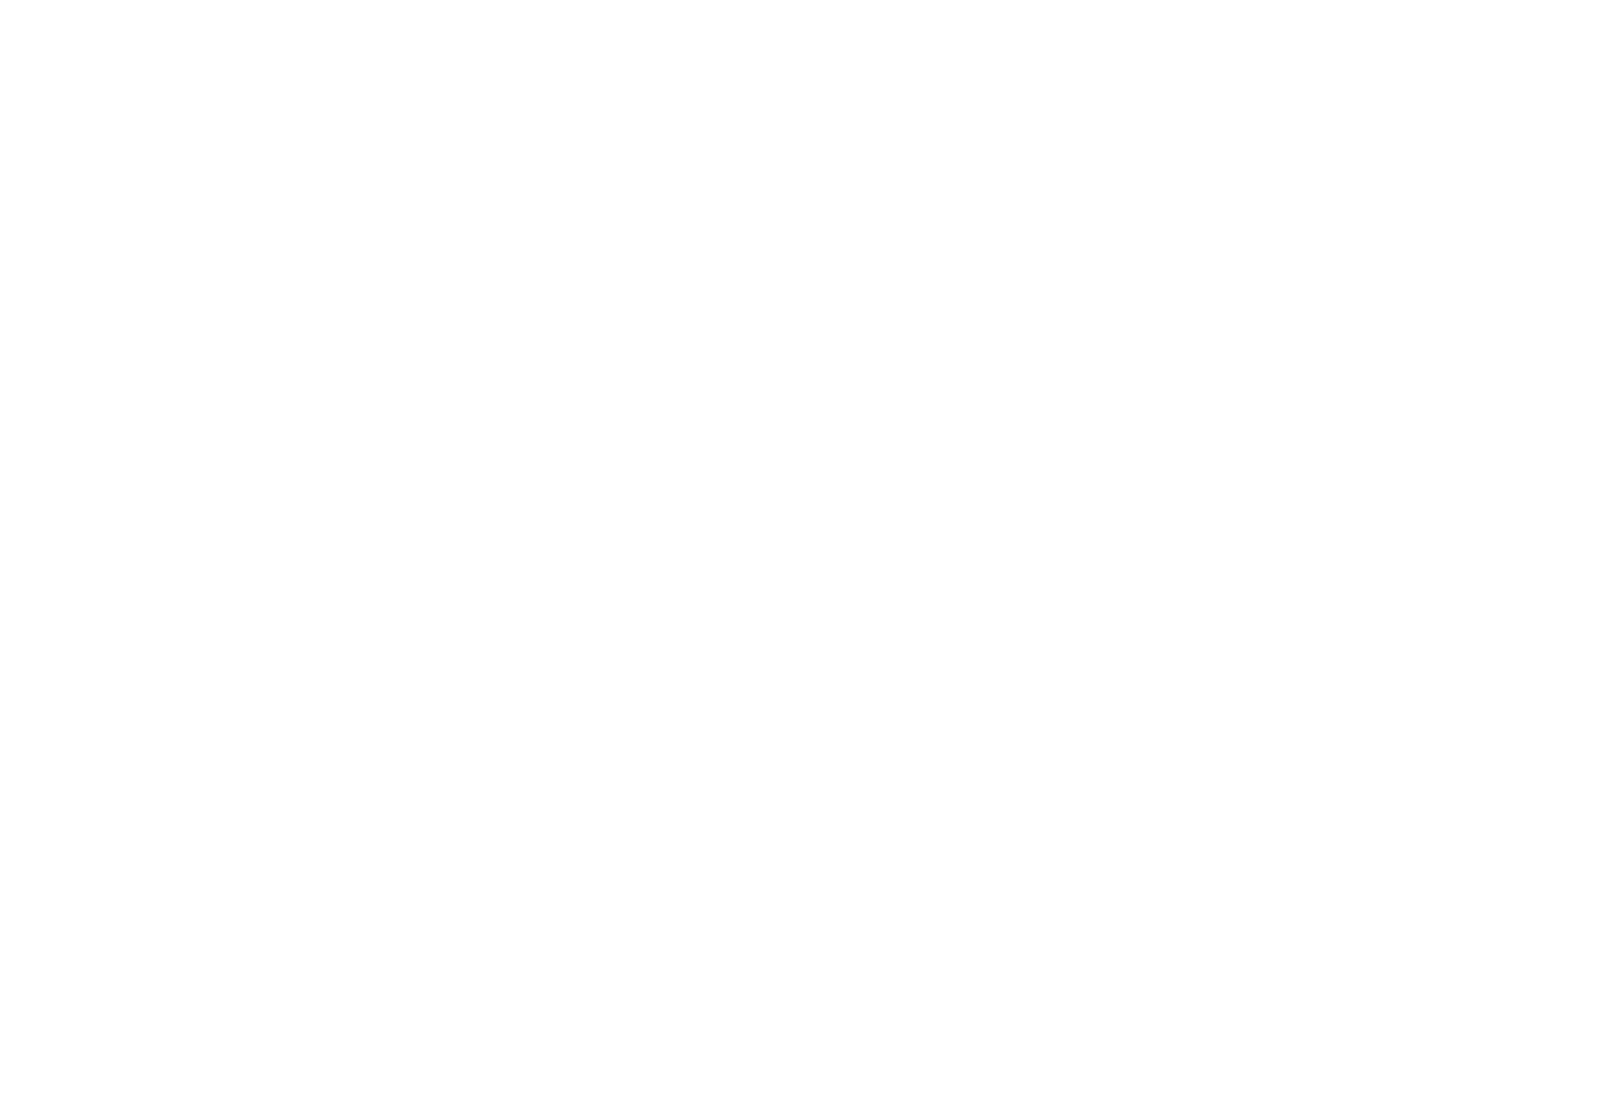 「ヤンキー怖い。でも…」お笑い芸人・バッドボーイズ佐田正樹の半生を描いた映画『デメキン』の主題歌をLEGO BIG MORLが書き下ろしサムネイル画像!